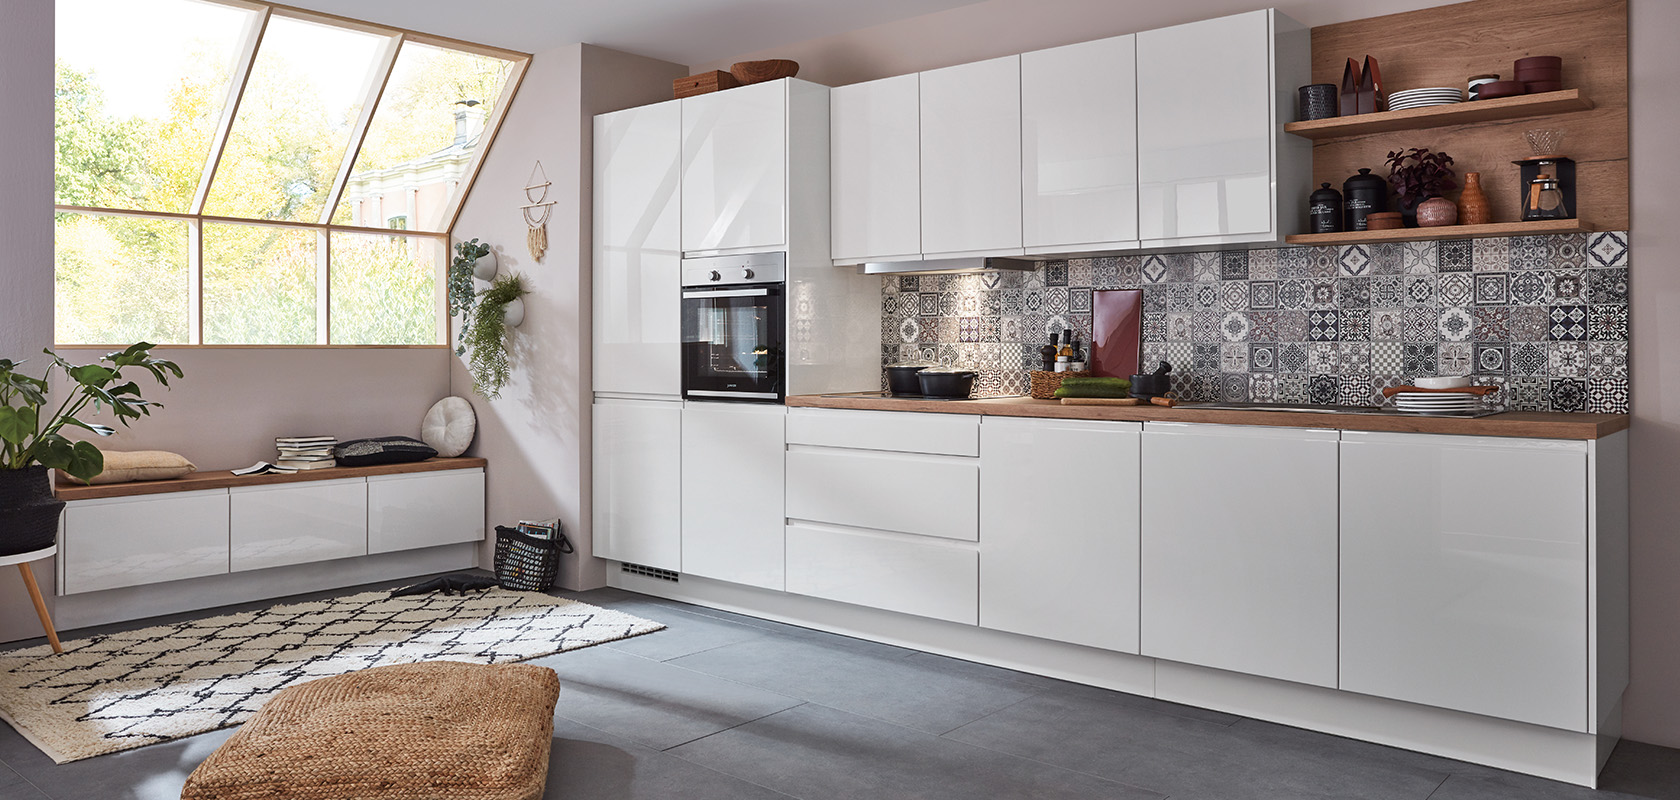 Moderne keukeninterieur met strakke witte kasten, geometrische tegels als achterwand en houten details, wat zorgt voor een knusse en stijlvolle kook- en leefruimte.